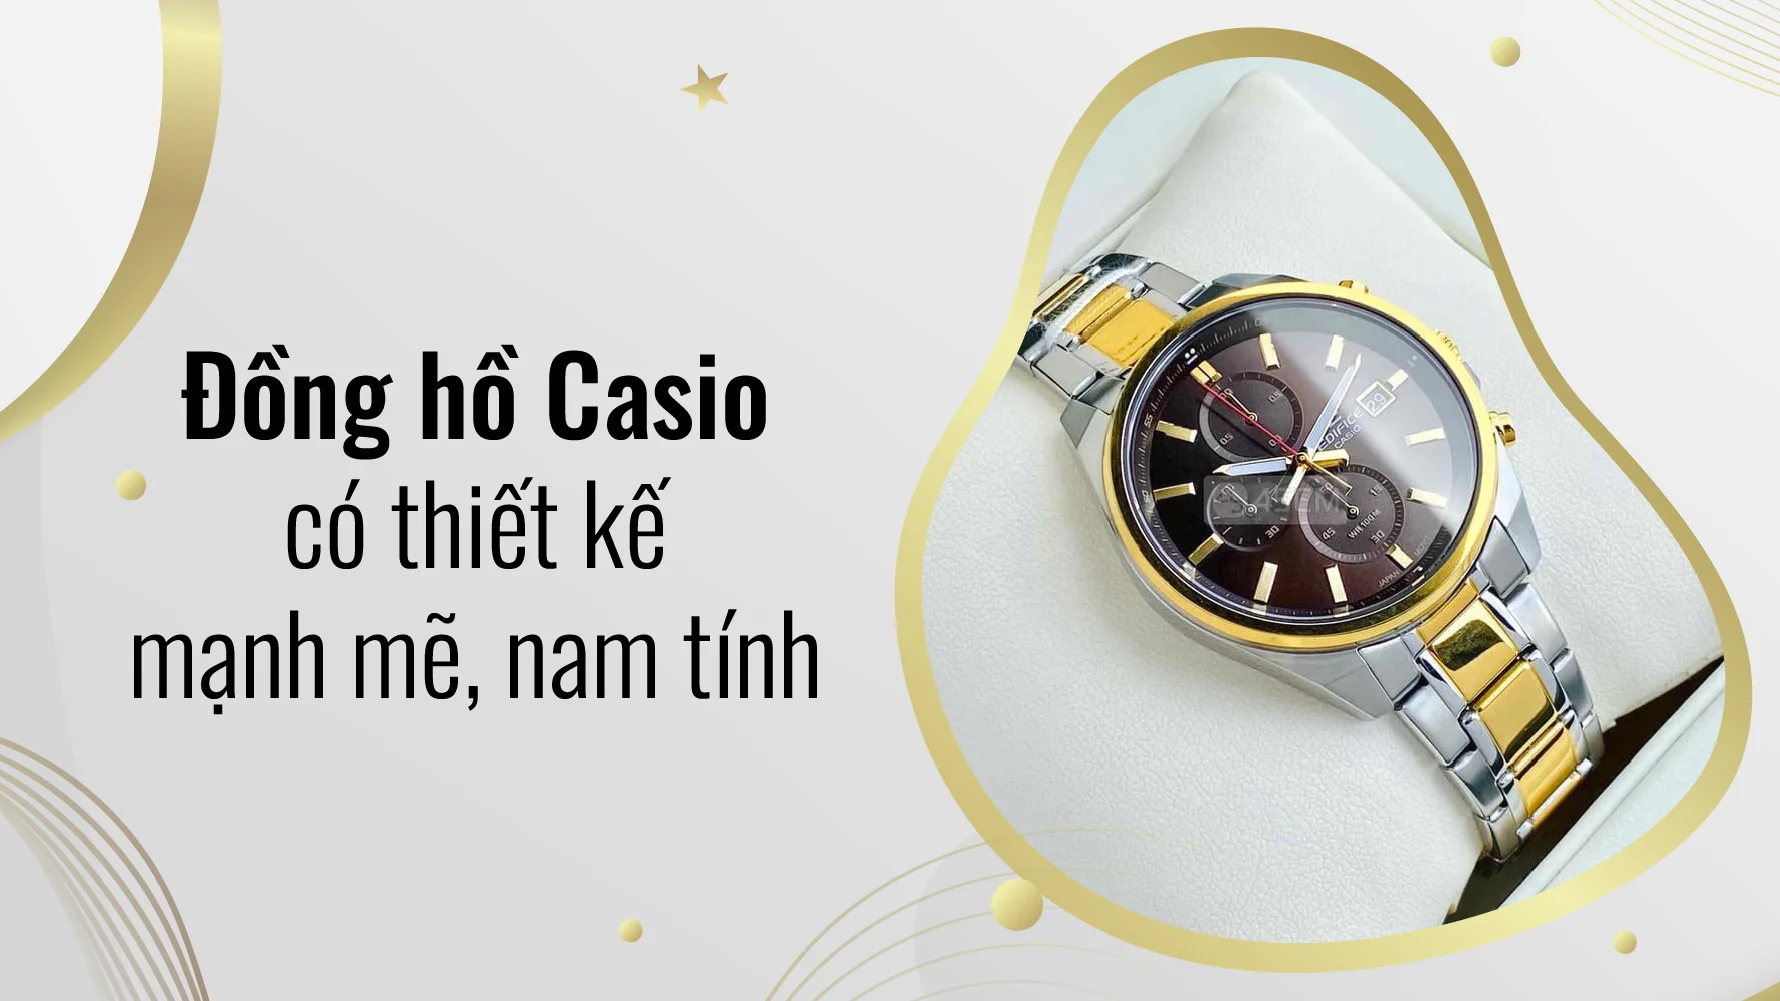 Đồng hồ Casio có thiết kế mạnh mẽ, nam tính